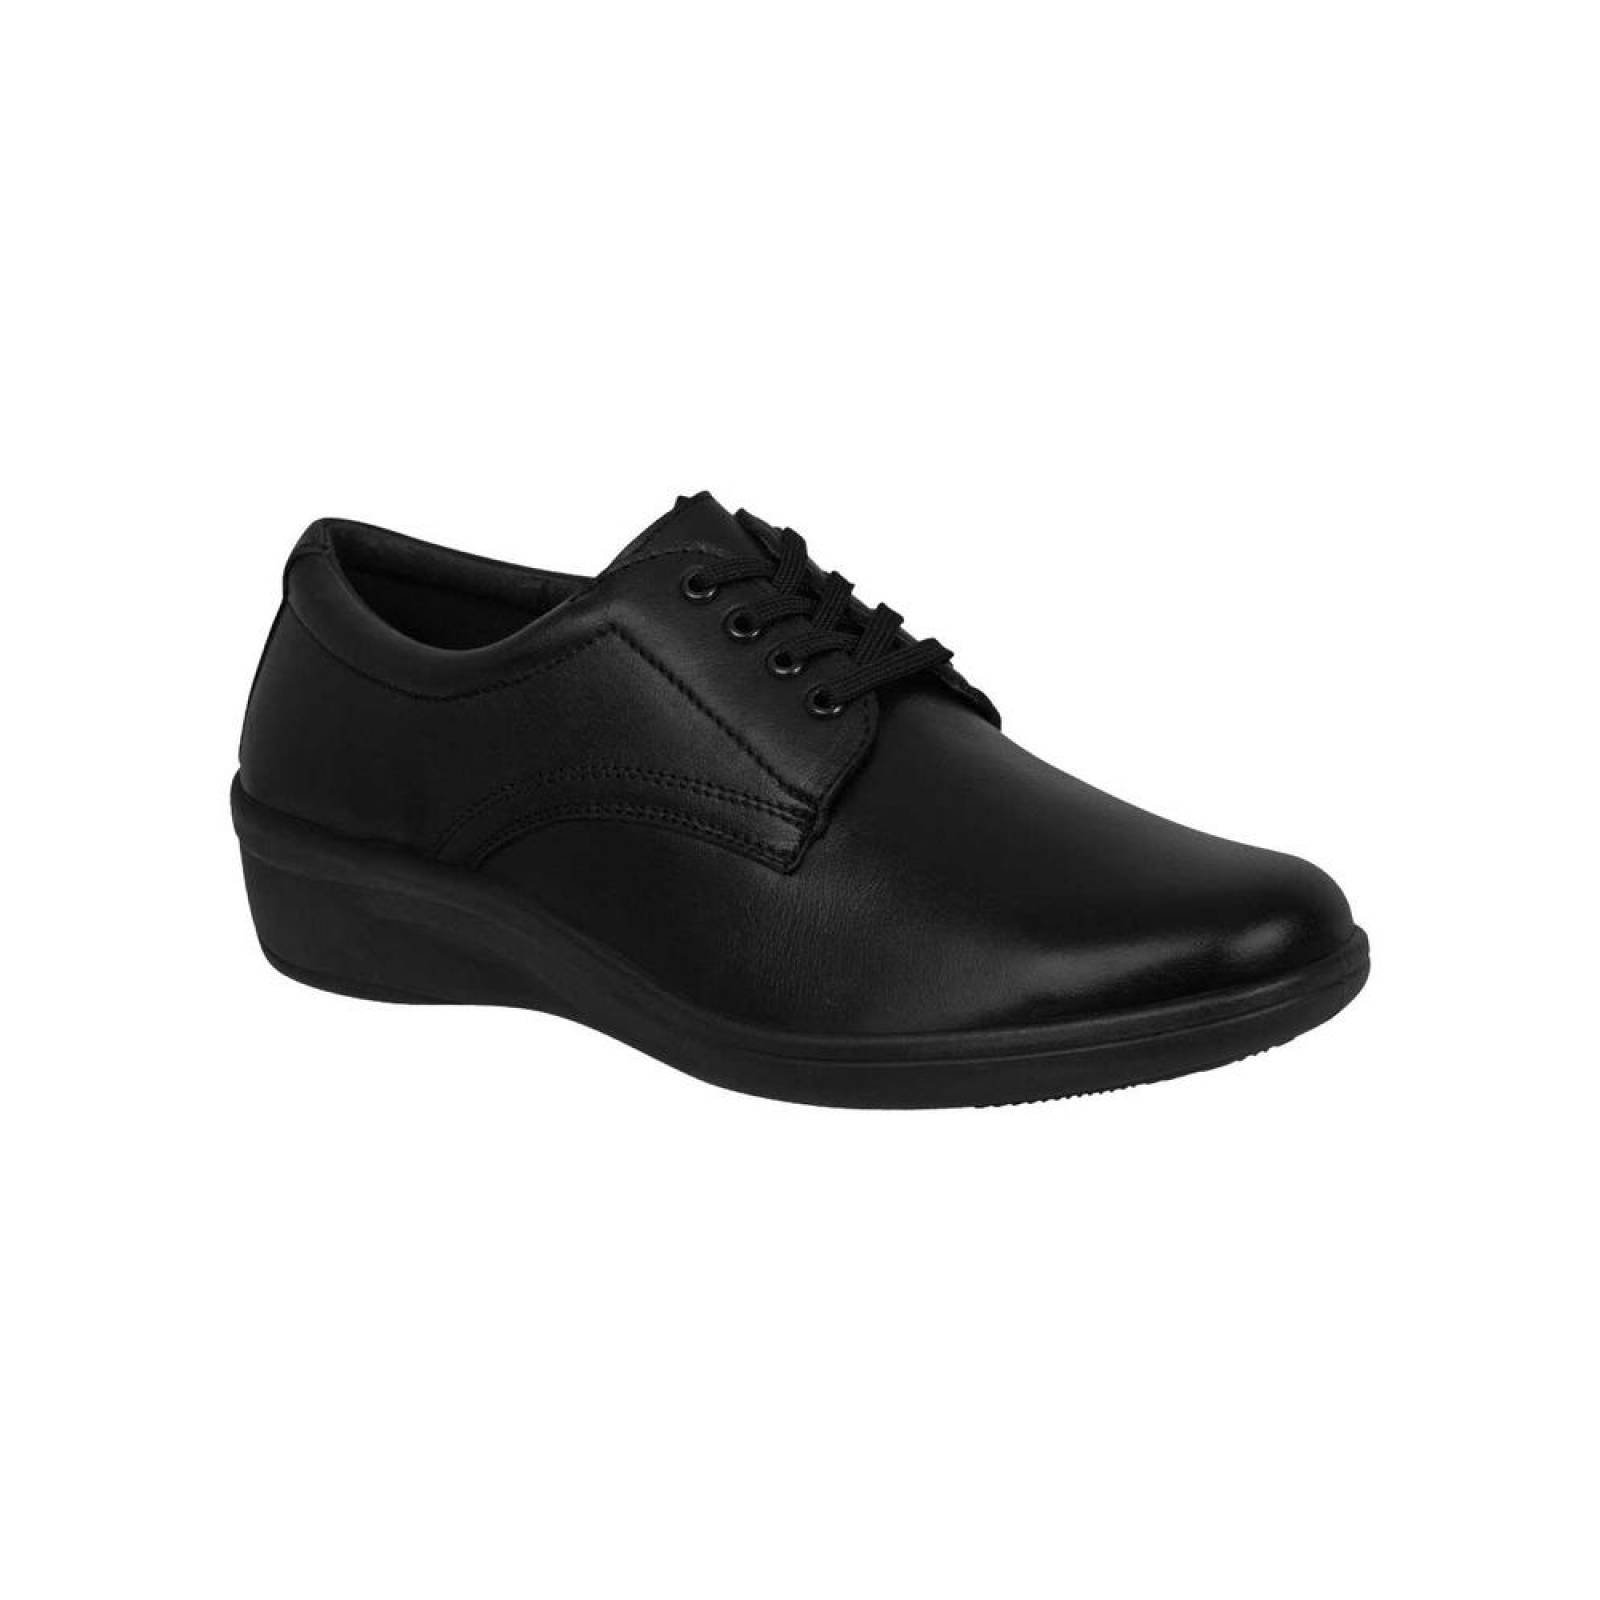 Zapato Casual Mujer Flexi Negro 02502905 Piel 